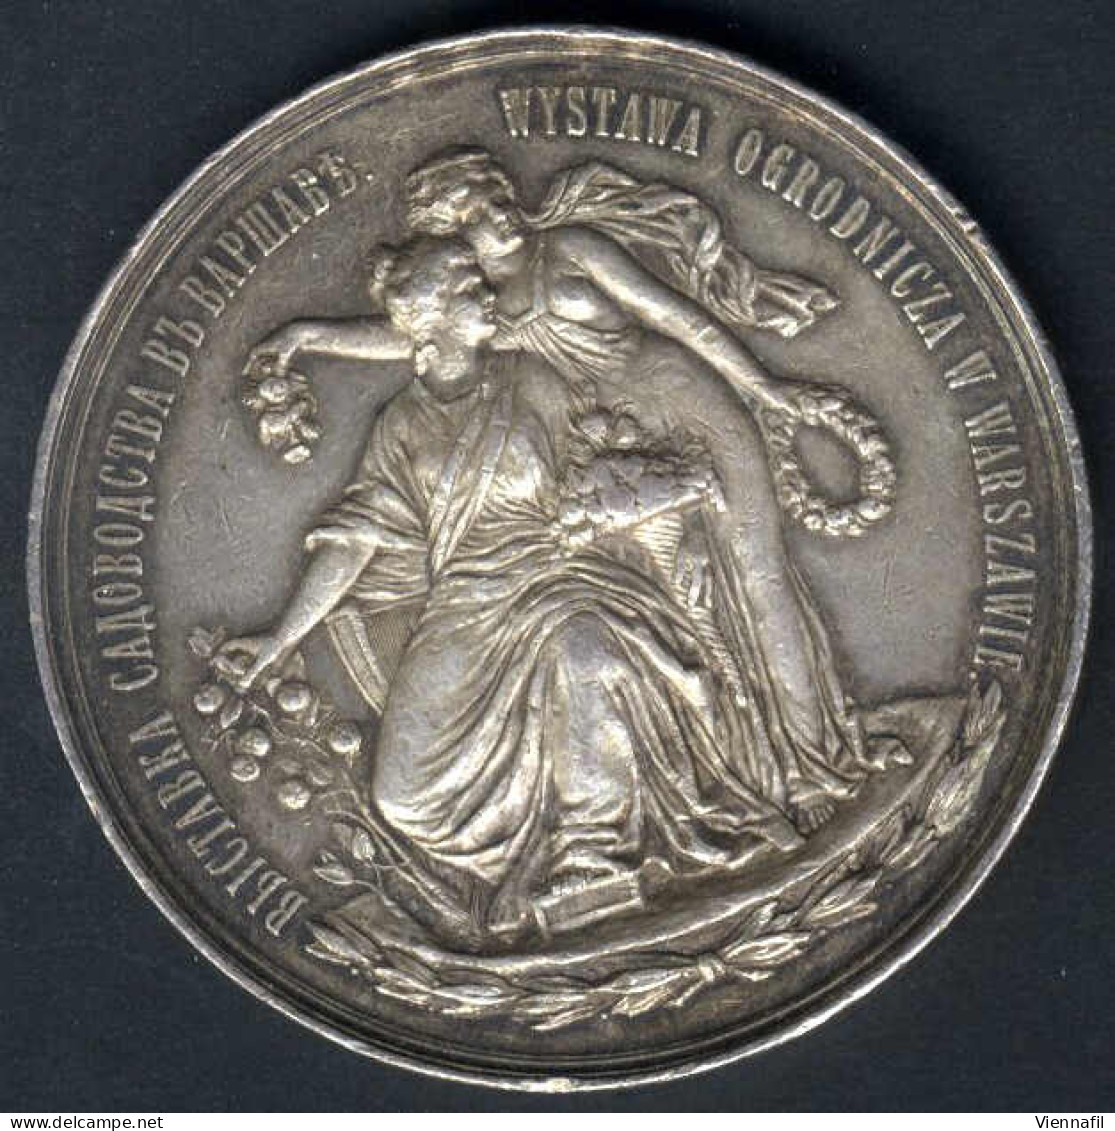 Medaille Der Warschauer Gartenbaugenossenschaft, Gartenbauausstellung Warschau 1895, Silbermedaille Von L. Steinman Für  - Polen